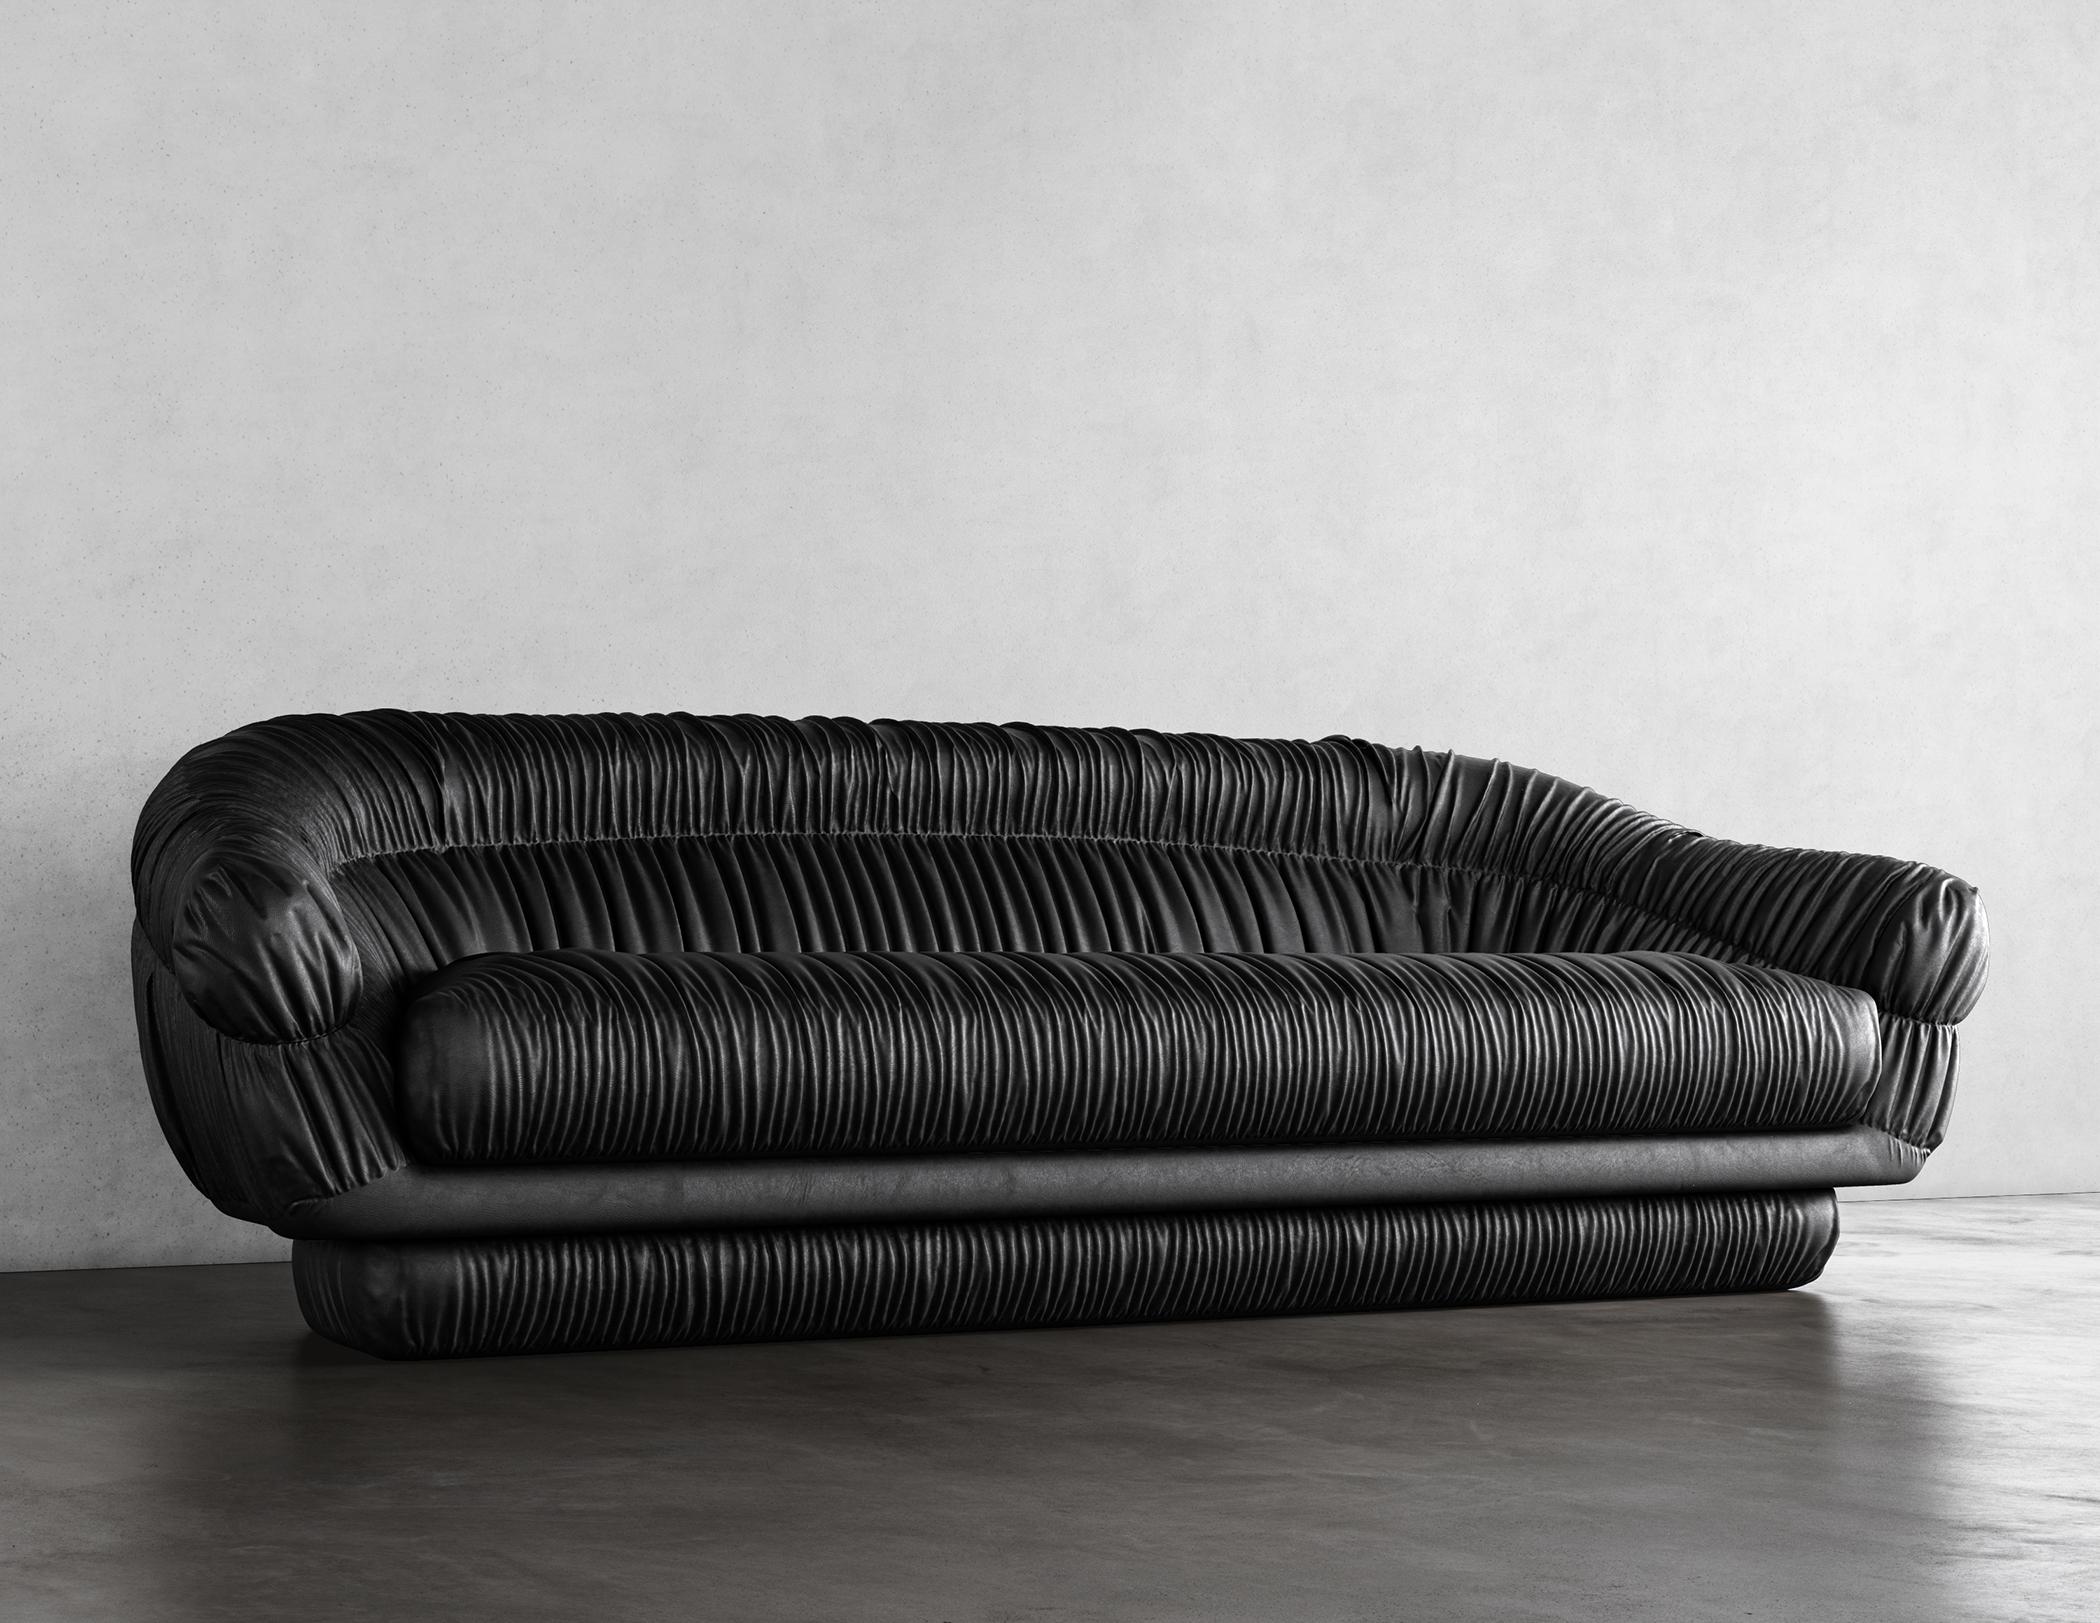 SWERVE SOFA - Canapé moderne en simili cuir noir

Le canapé Swerve, avec son revêtement en fausse peau d'agneau noir et son design moderne en ruchés, est un meuble élégant et confortable qui ajoutera une touche d'élégance à tout espace de vie. Le